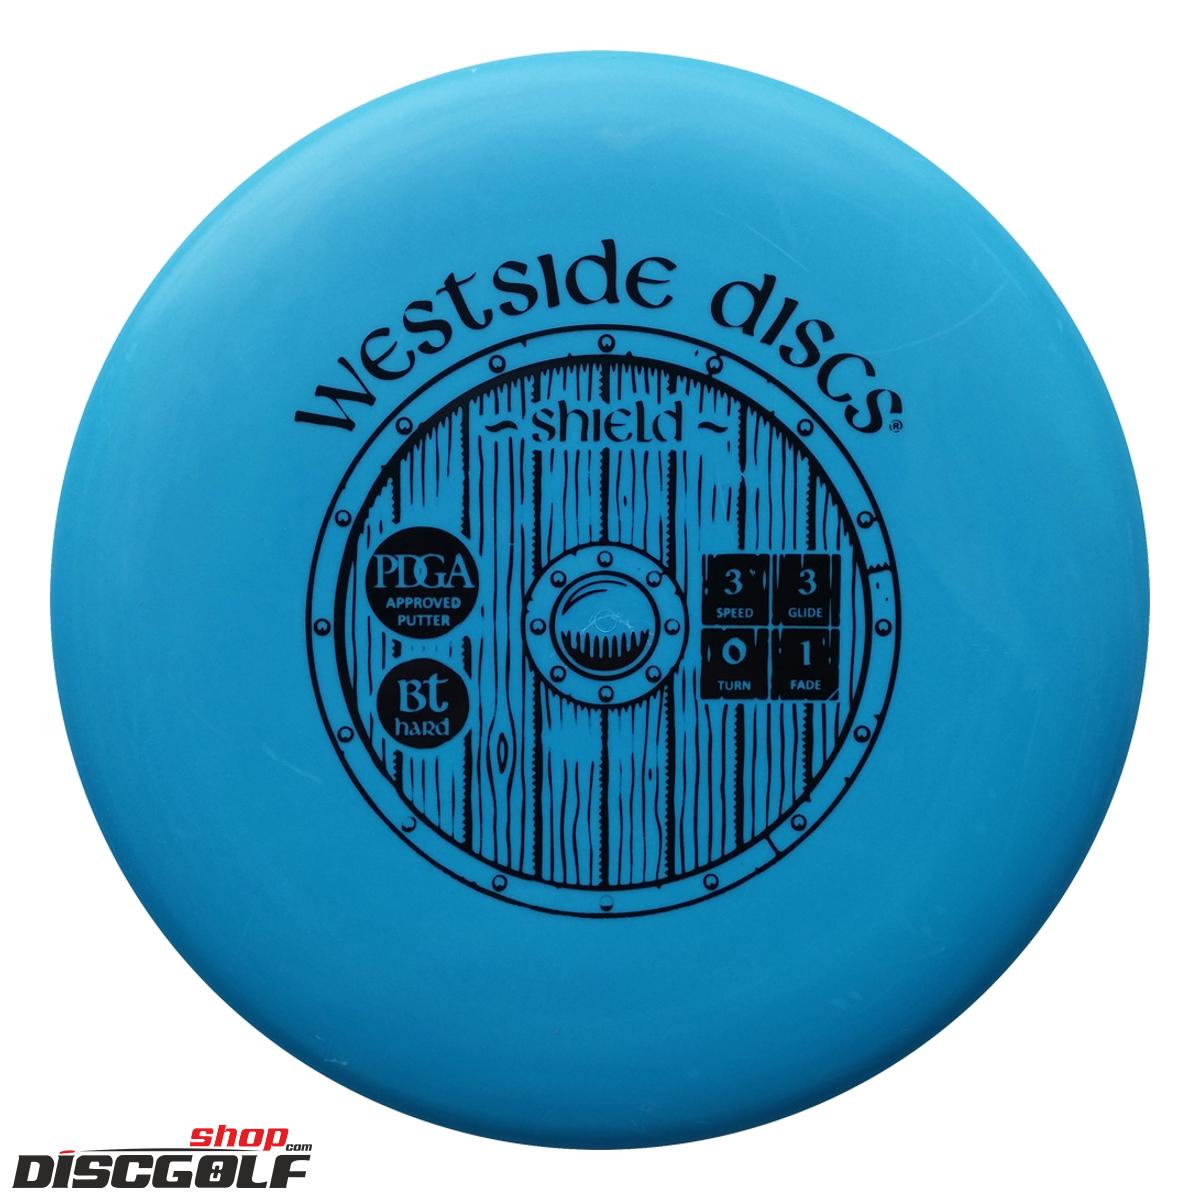 Westside Shield BT Hard (discgolf)